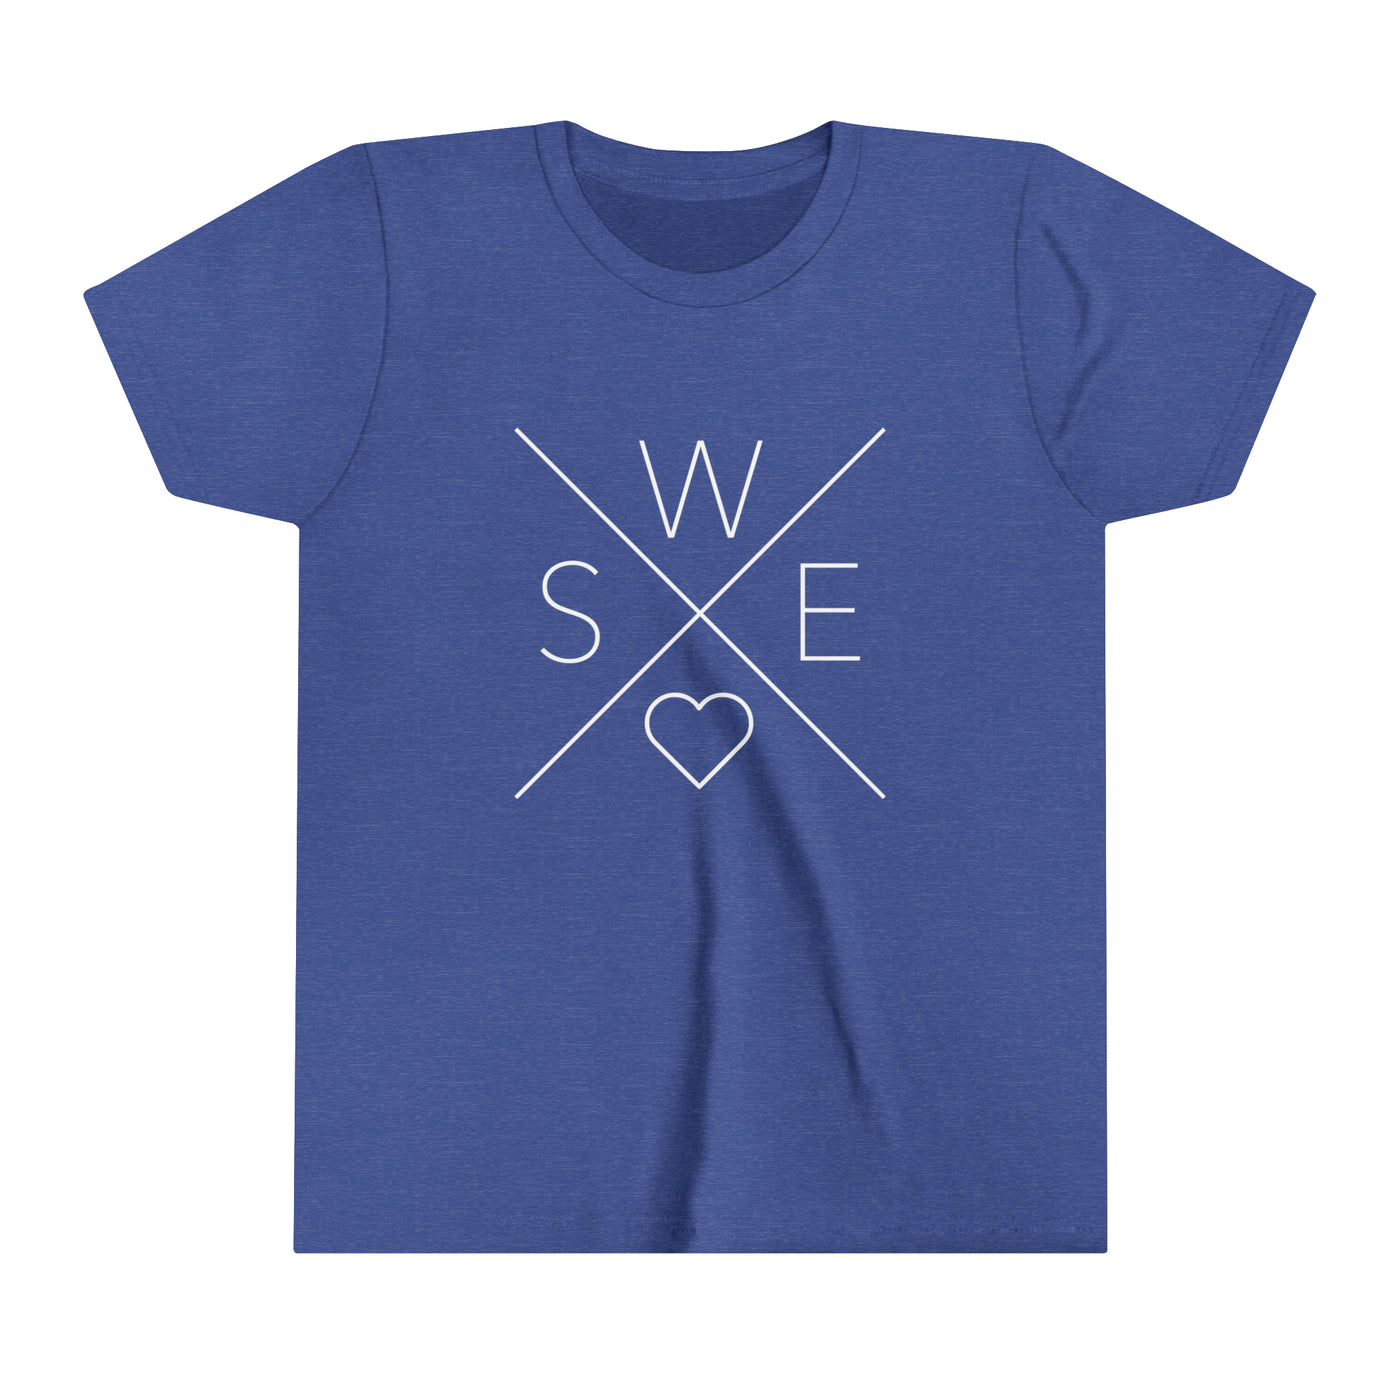 Sweden Love Kids T-Shirt